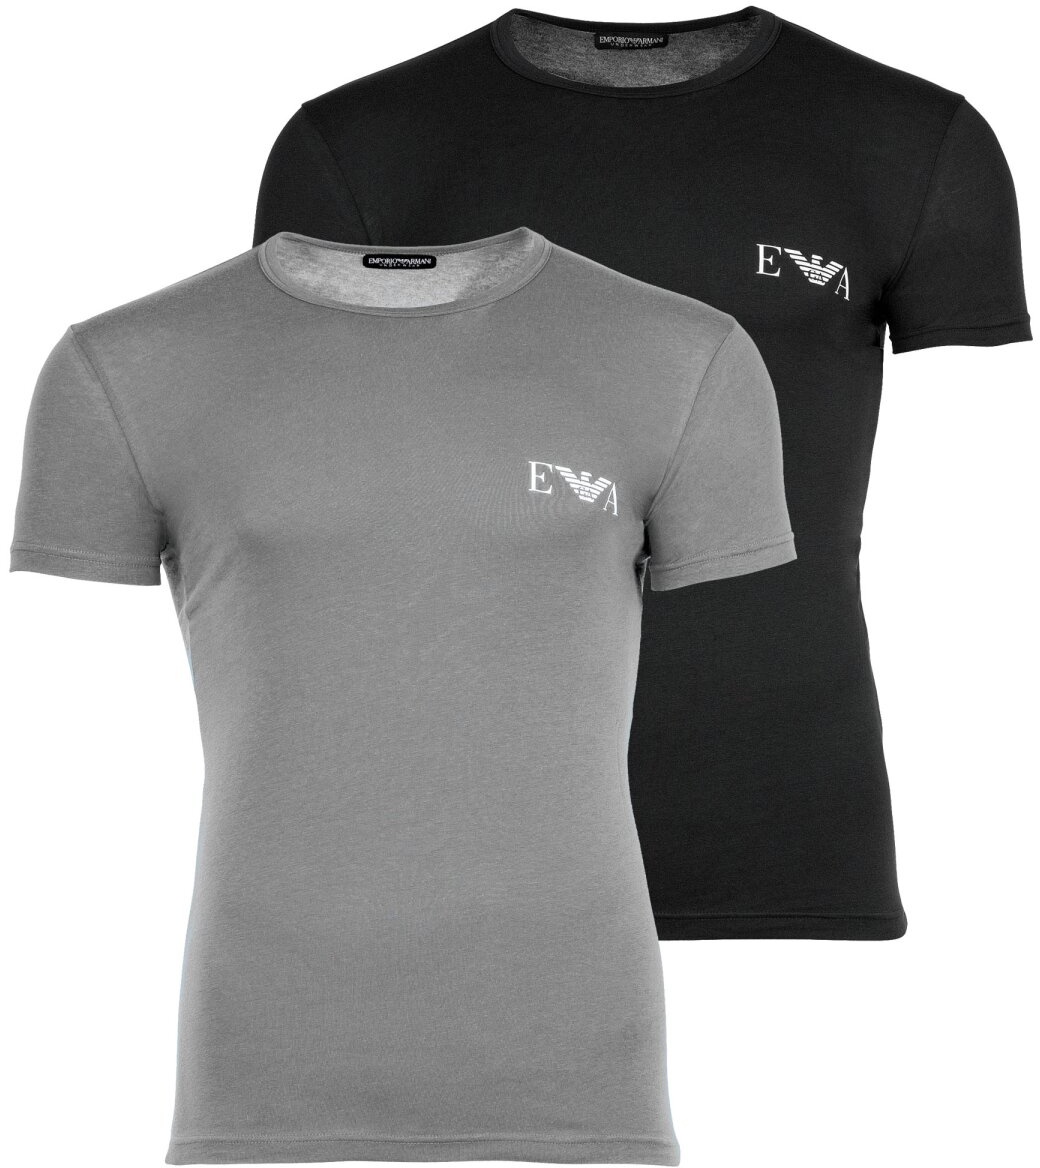 EMPORIO ARMANI Herren T-Shirt, 2er Pack - BOLD MONOGRAM, Rundhals, Slim Fit, Stretch Cotton Schwarz/Grau S